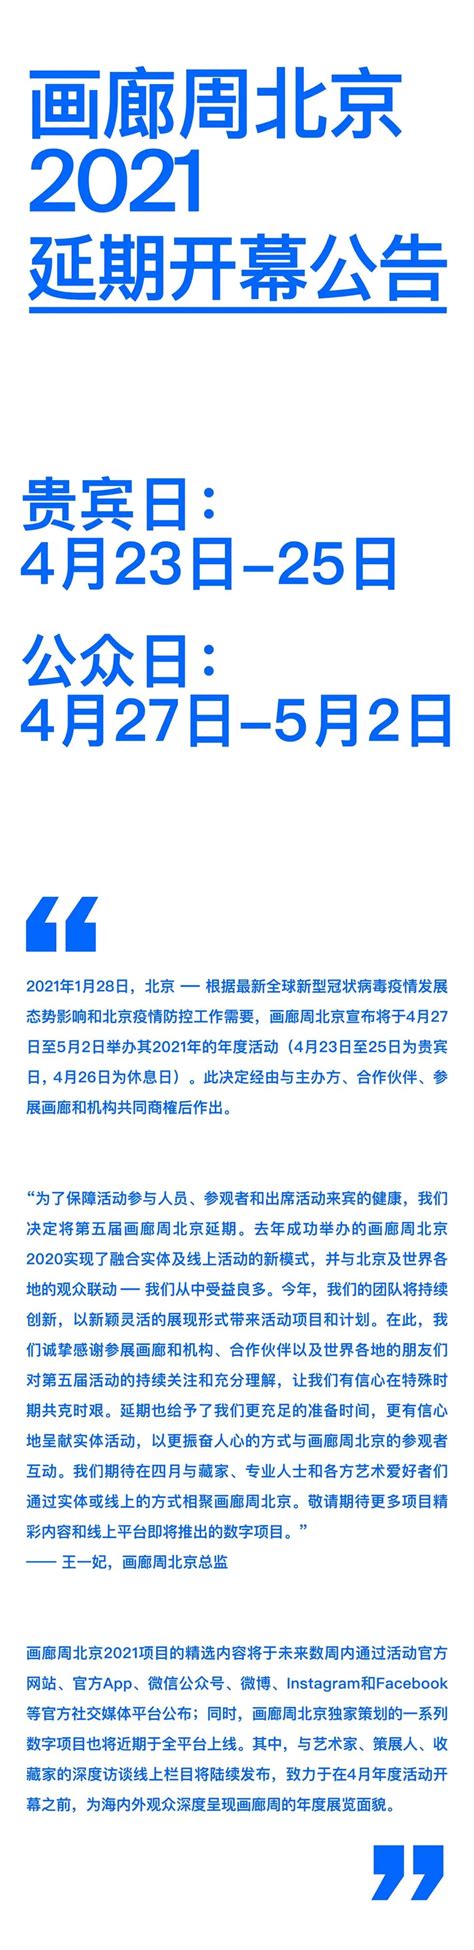 快讯 | 画廊周北京2021年将延期至4月底举行-市场观察-雅昌艺术市场监测中心